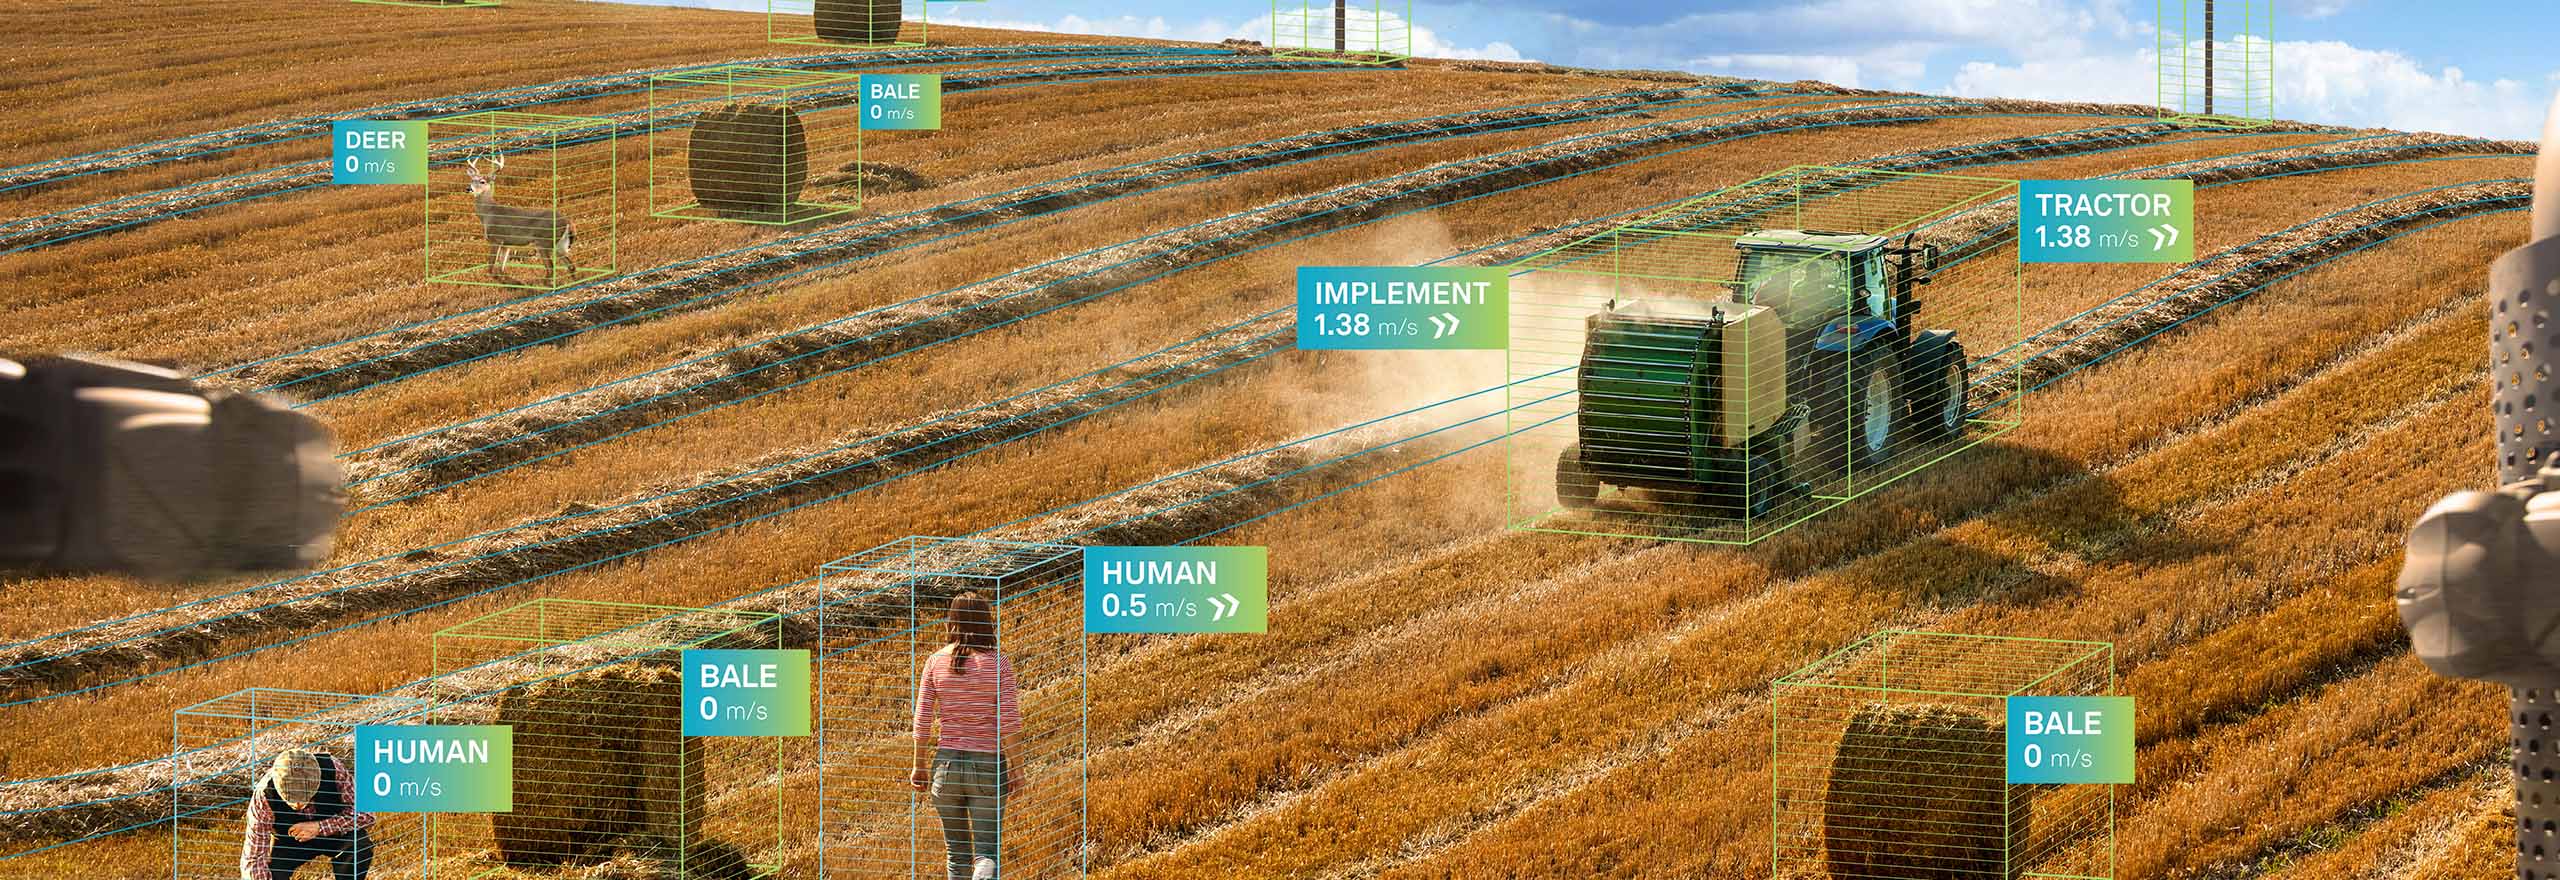 Autonomer Traktor von Hexagon bei der Arbeit auf dem Feld in einer Smart-Farming-Umgebung